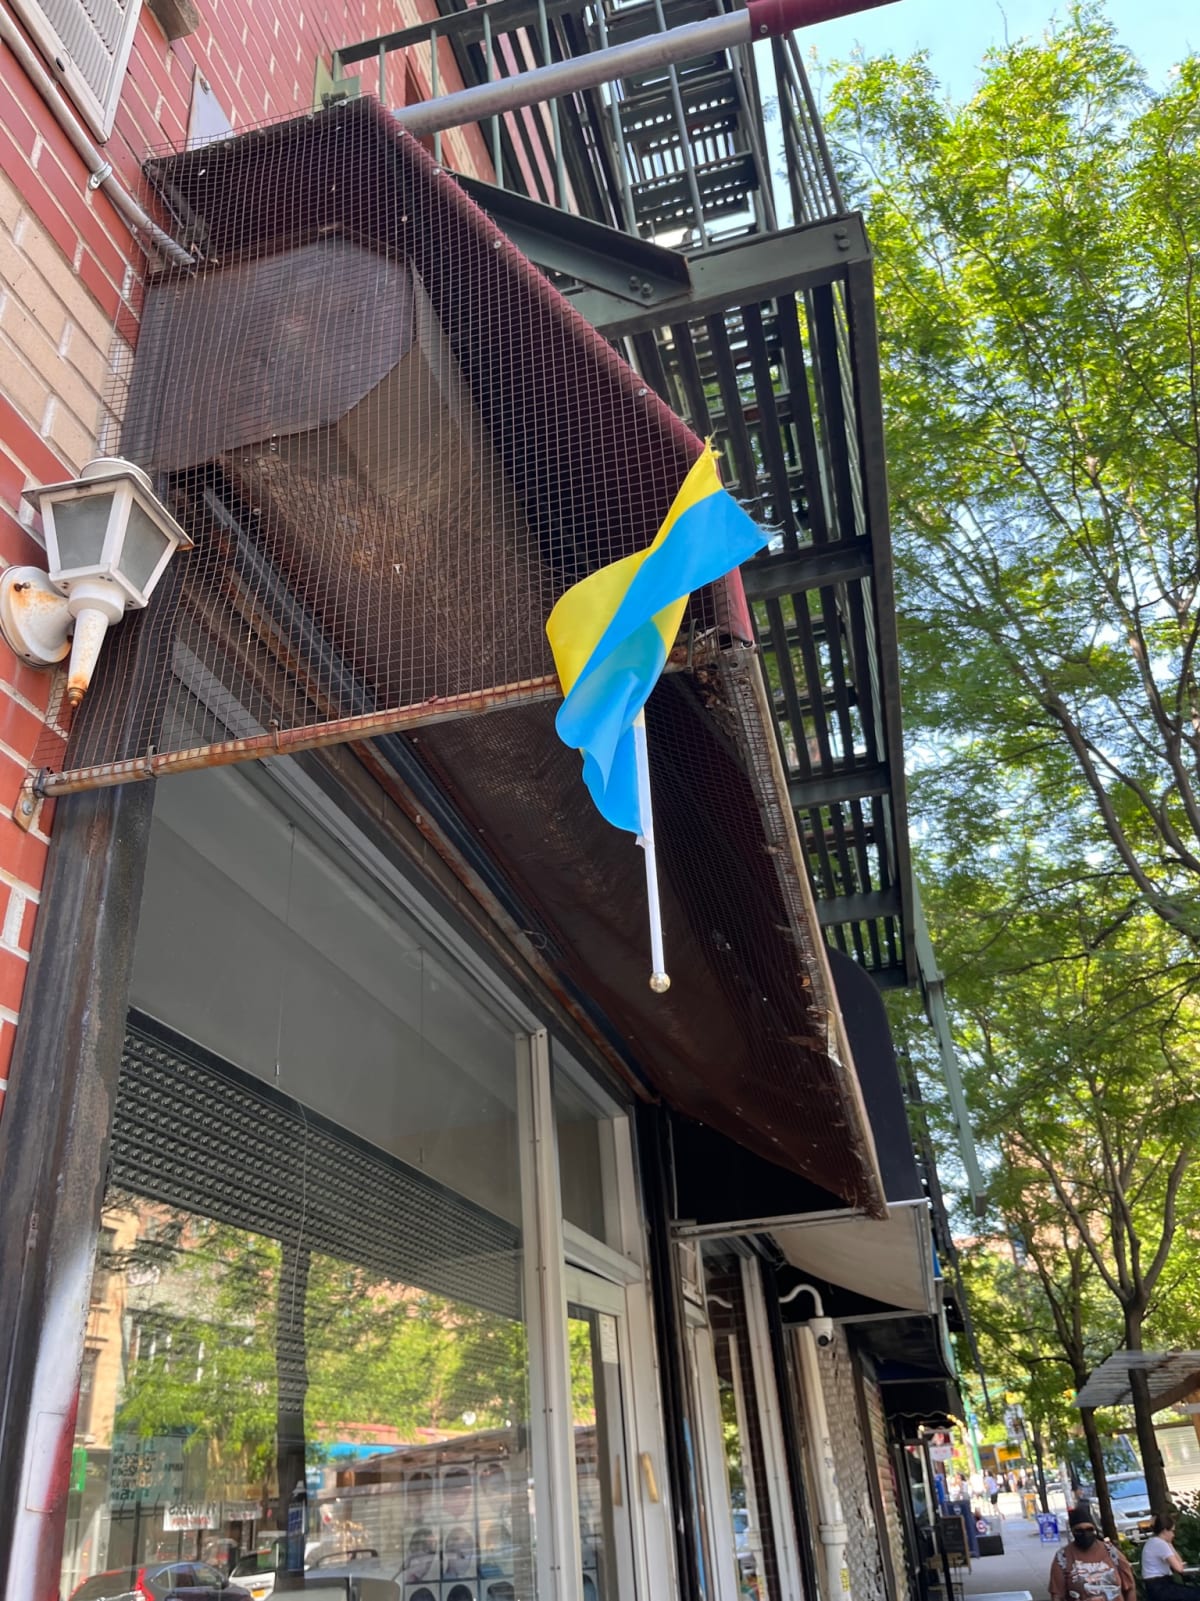 photo from album ukraine.flags